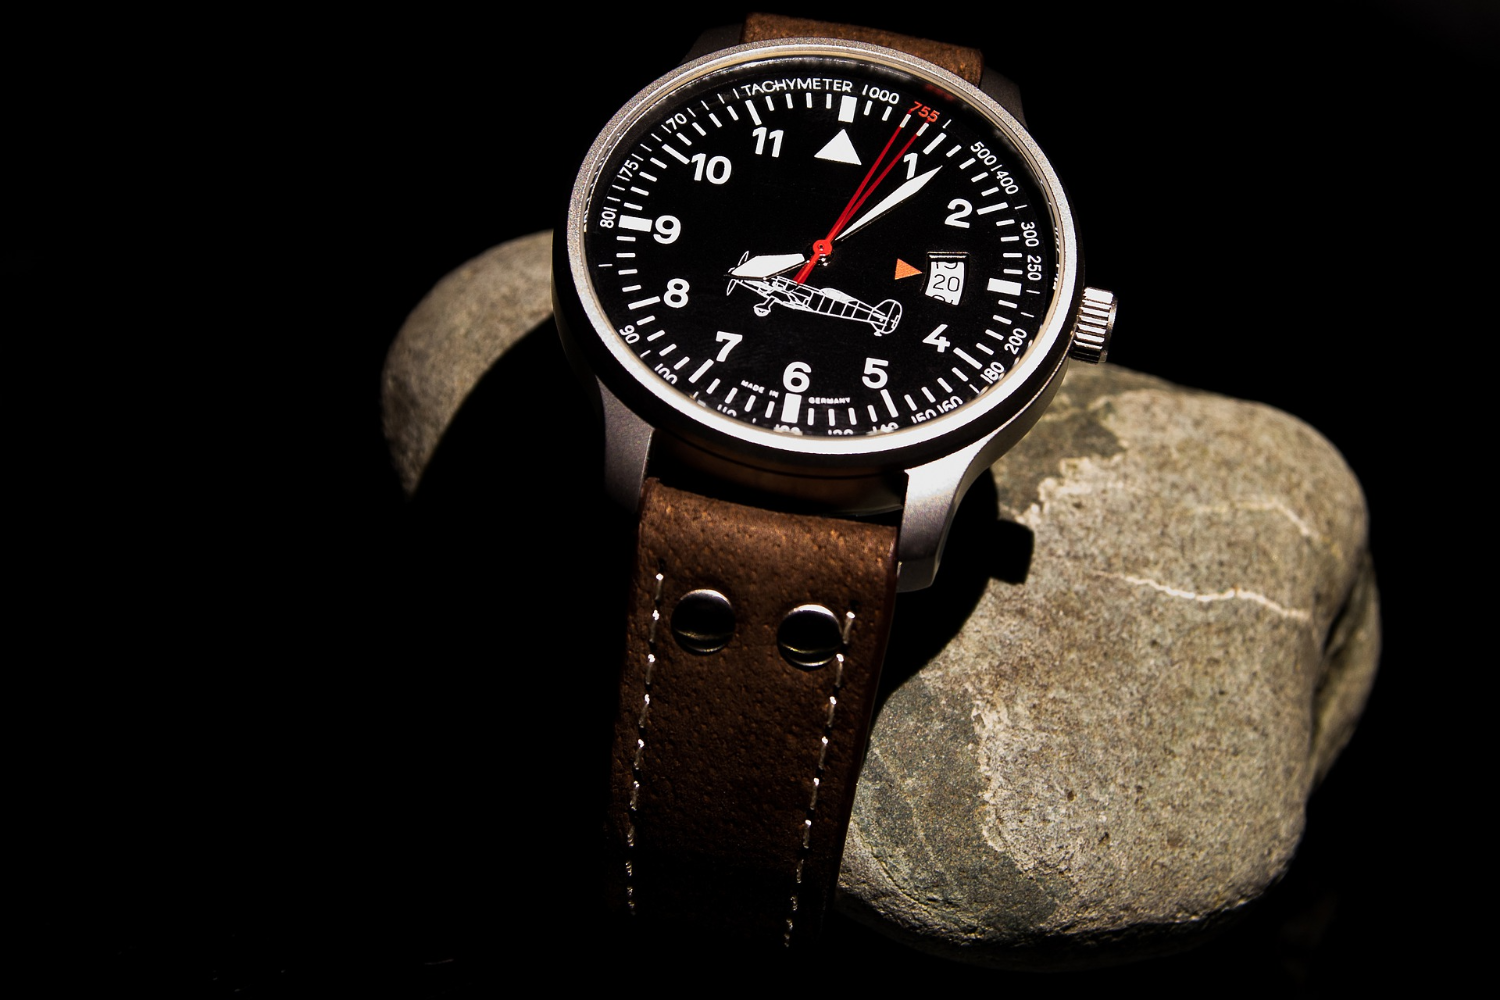 フレデリック・コンスタントは技術と熱意で自社一貫製造を行う時計メーカー